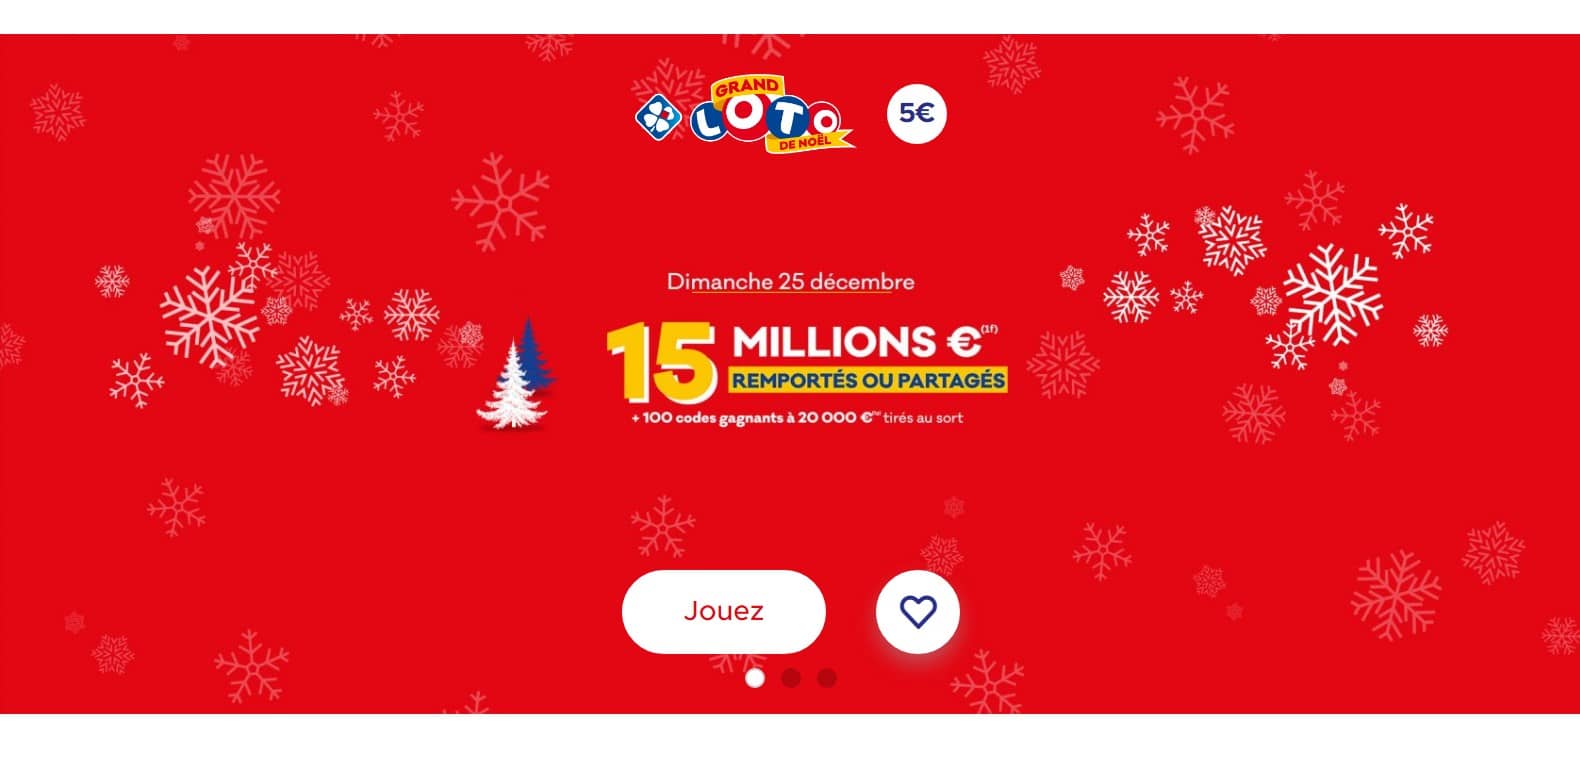 Grand Loto de Noël - Super Jackpot de 15 millions d’euros